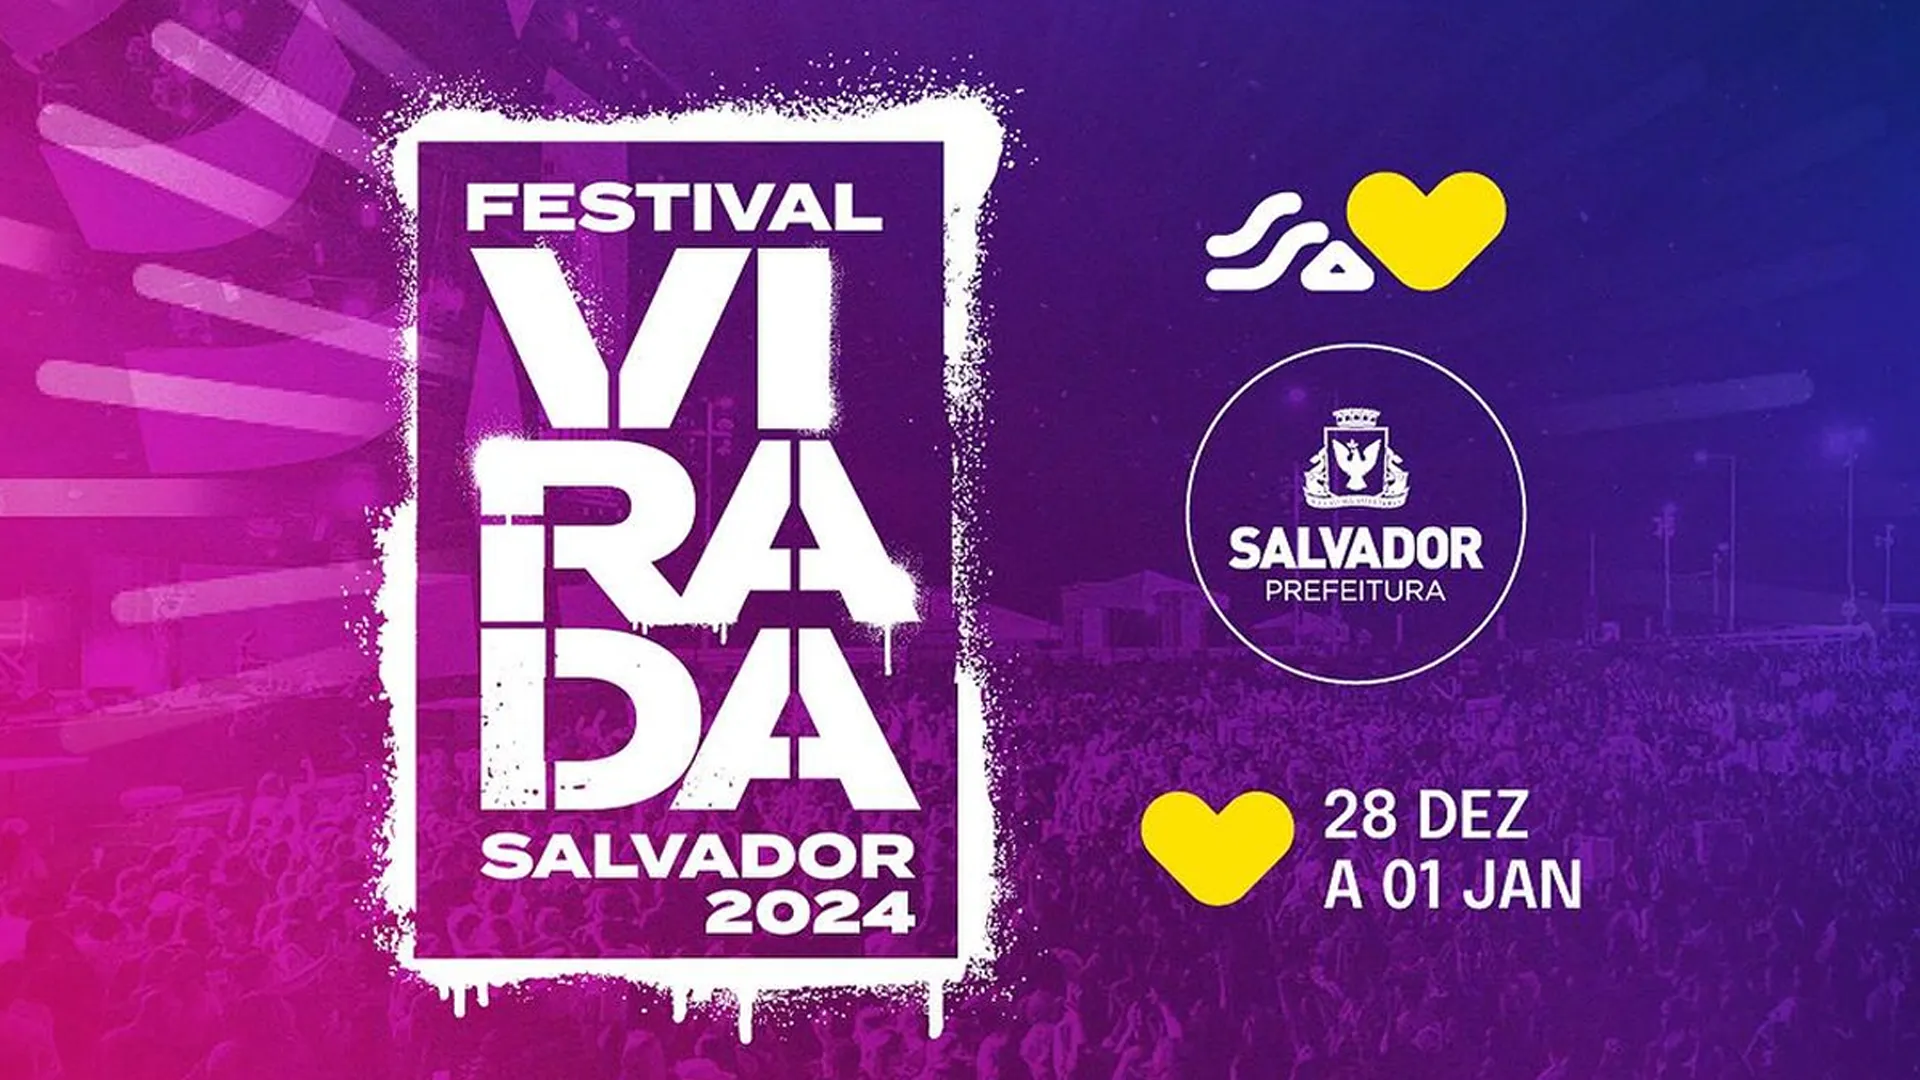 
		Festival Virada Salvador 2024 - 31 de dezembro